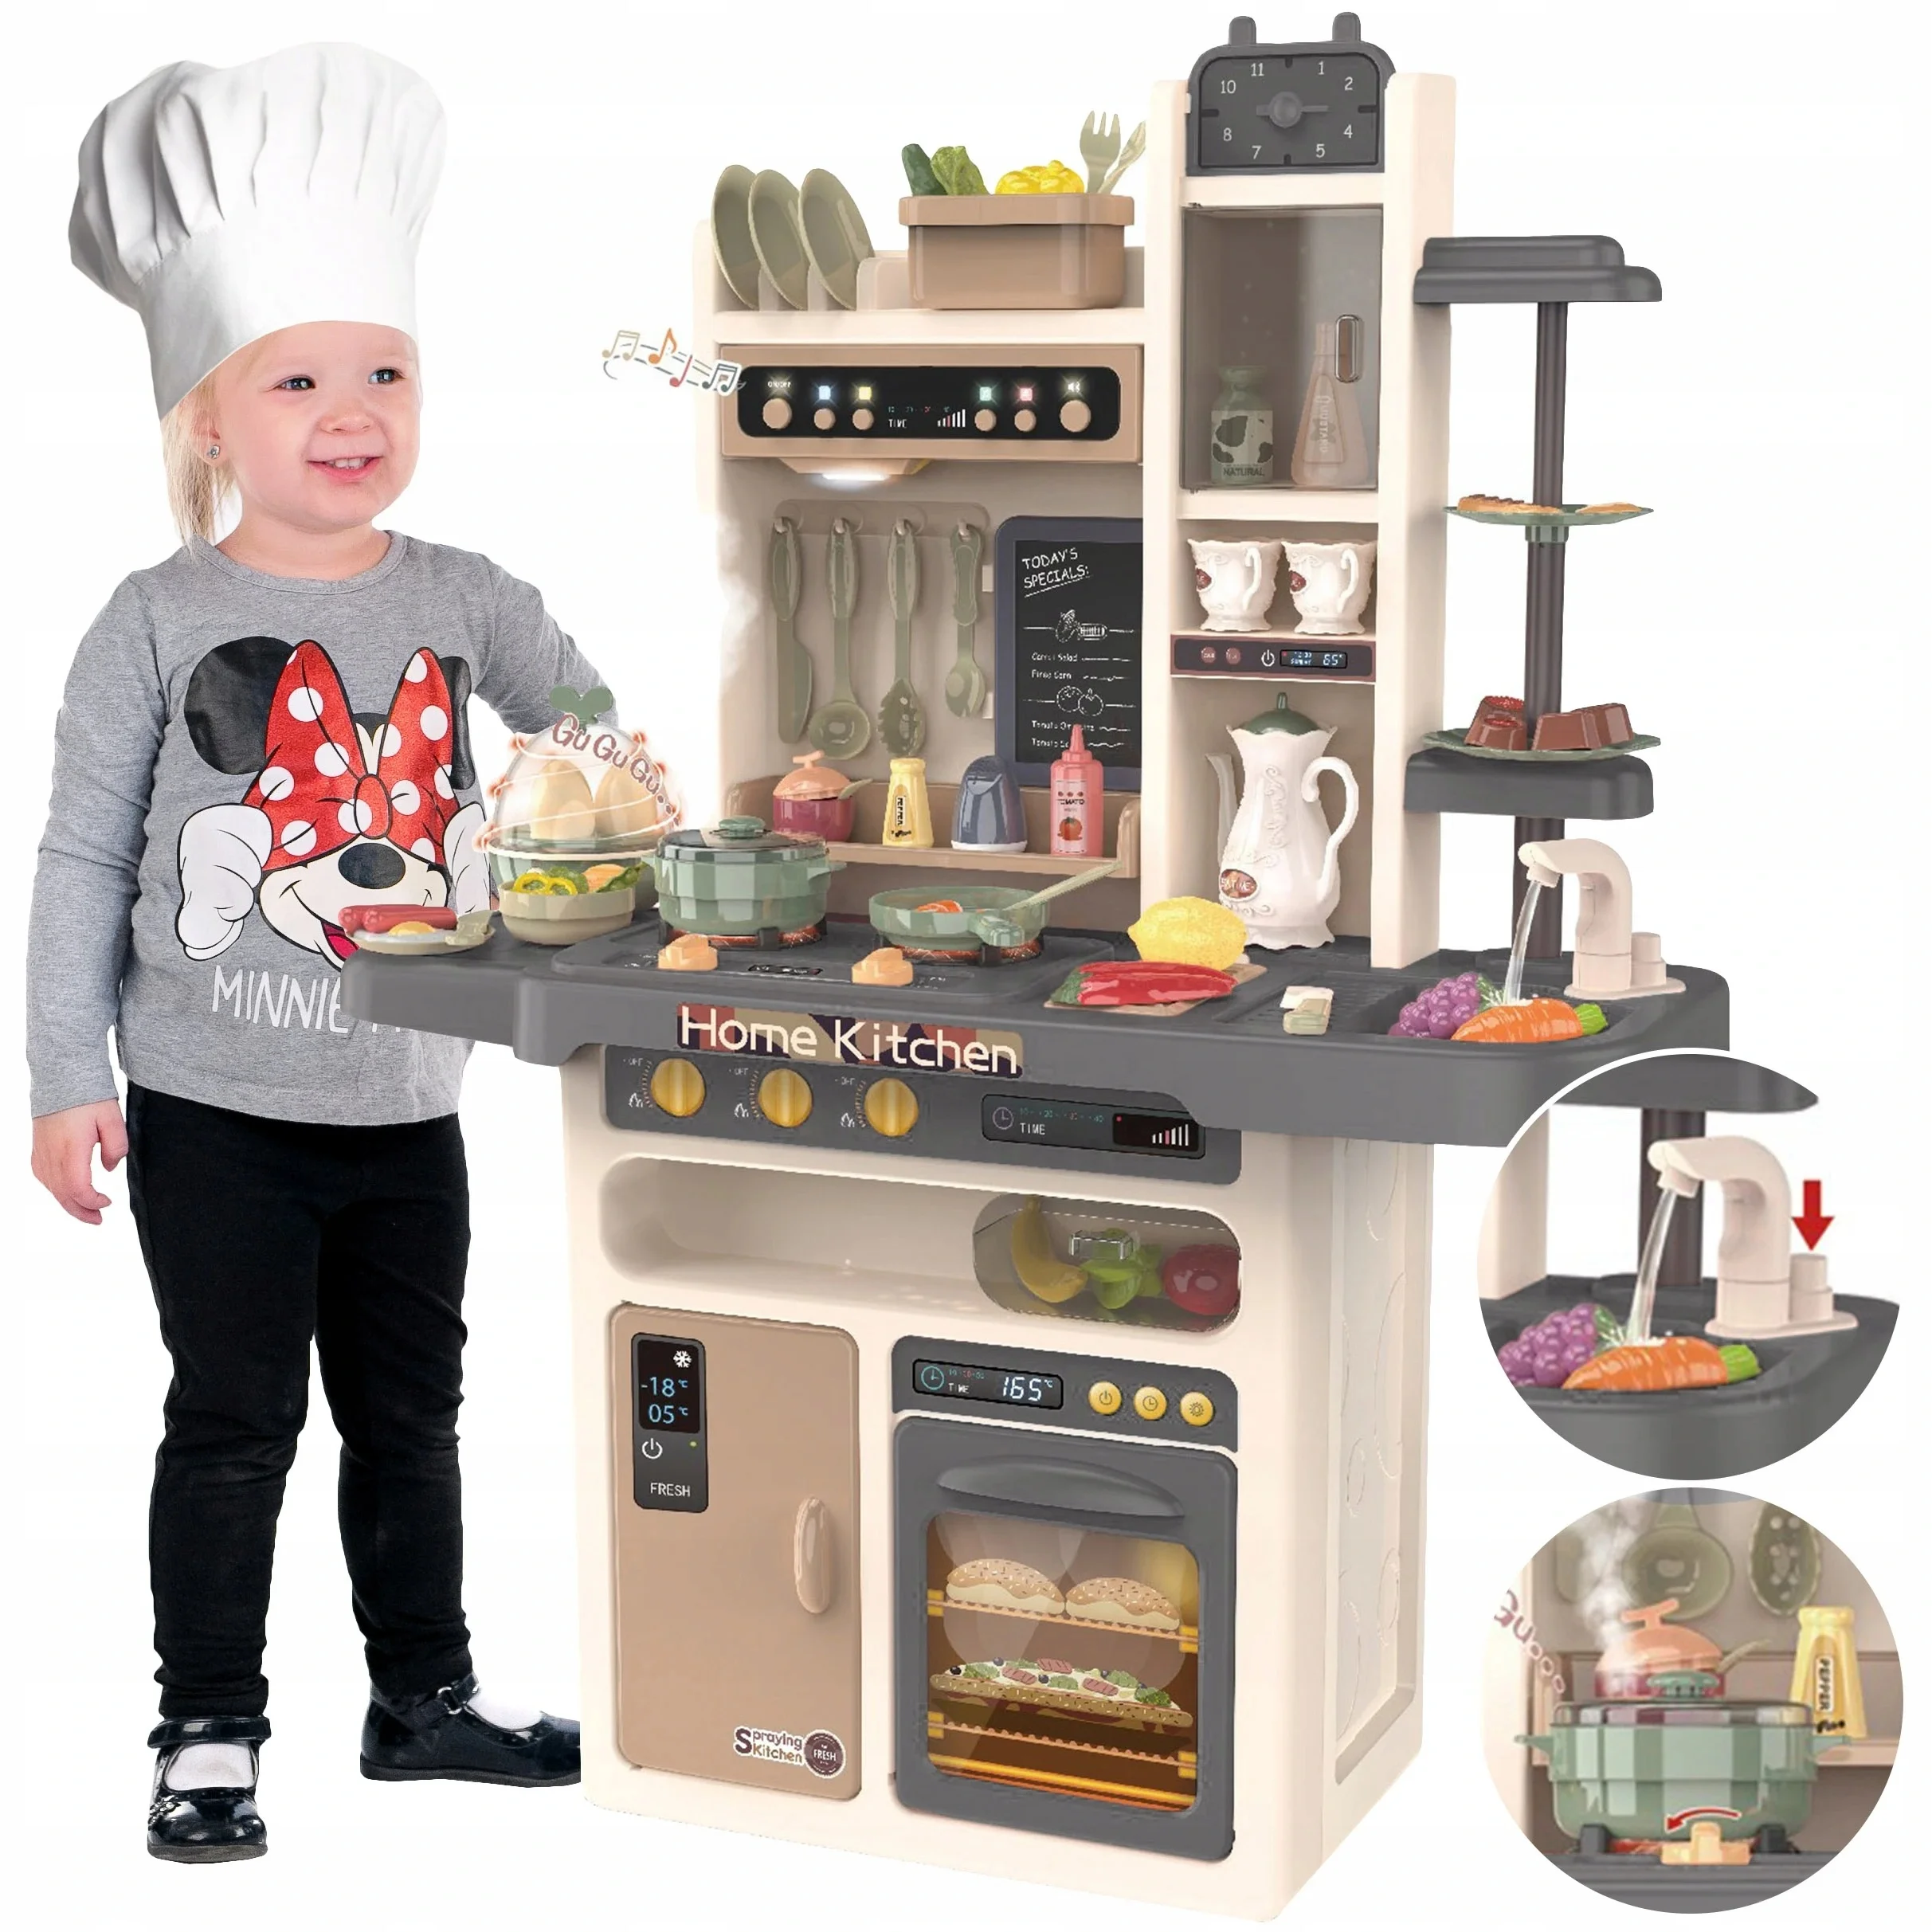 Source Jouet de cuisine pour enfants, jeu de Simulation, maison de cuisine,  pour garçons et filles, avec son et lumière électrique on m.alibaba.com